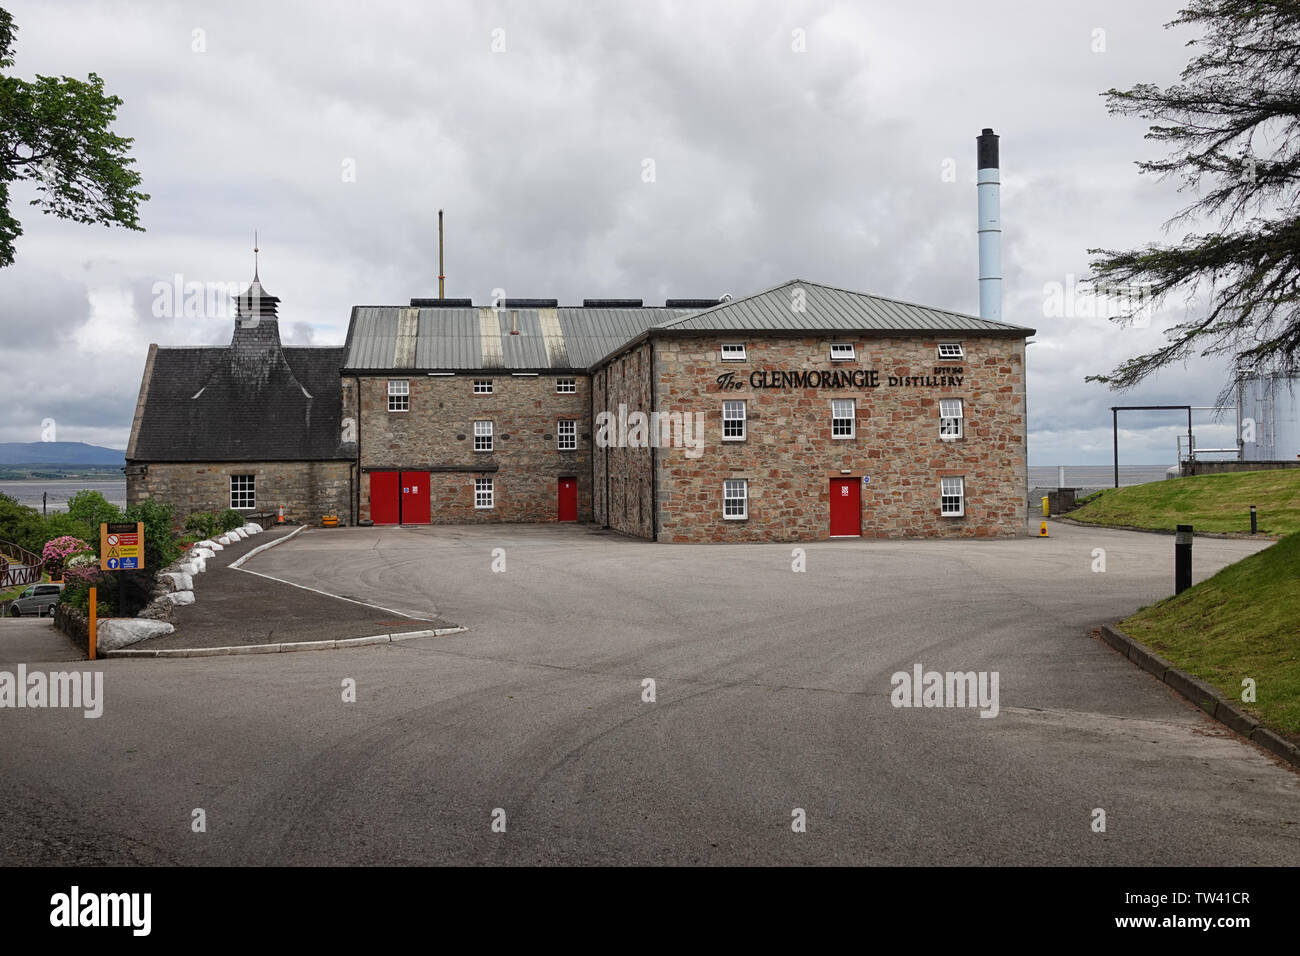 Tain, Escocia - Junio 11, 2019: la parte delantera exterior de Glenmorangie Distillery, fundada en 1843 y situada en las Highlands escocesas, está demostrado. Foto de stock